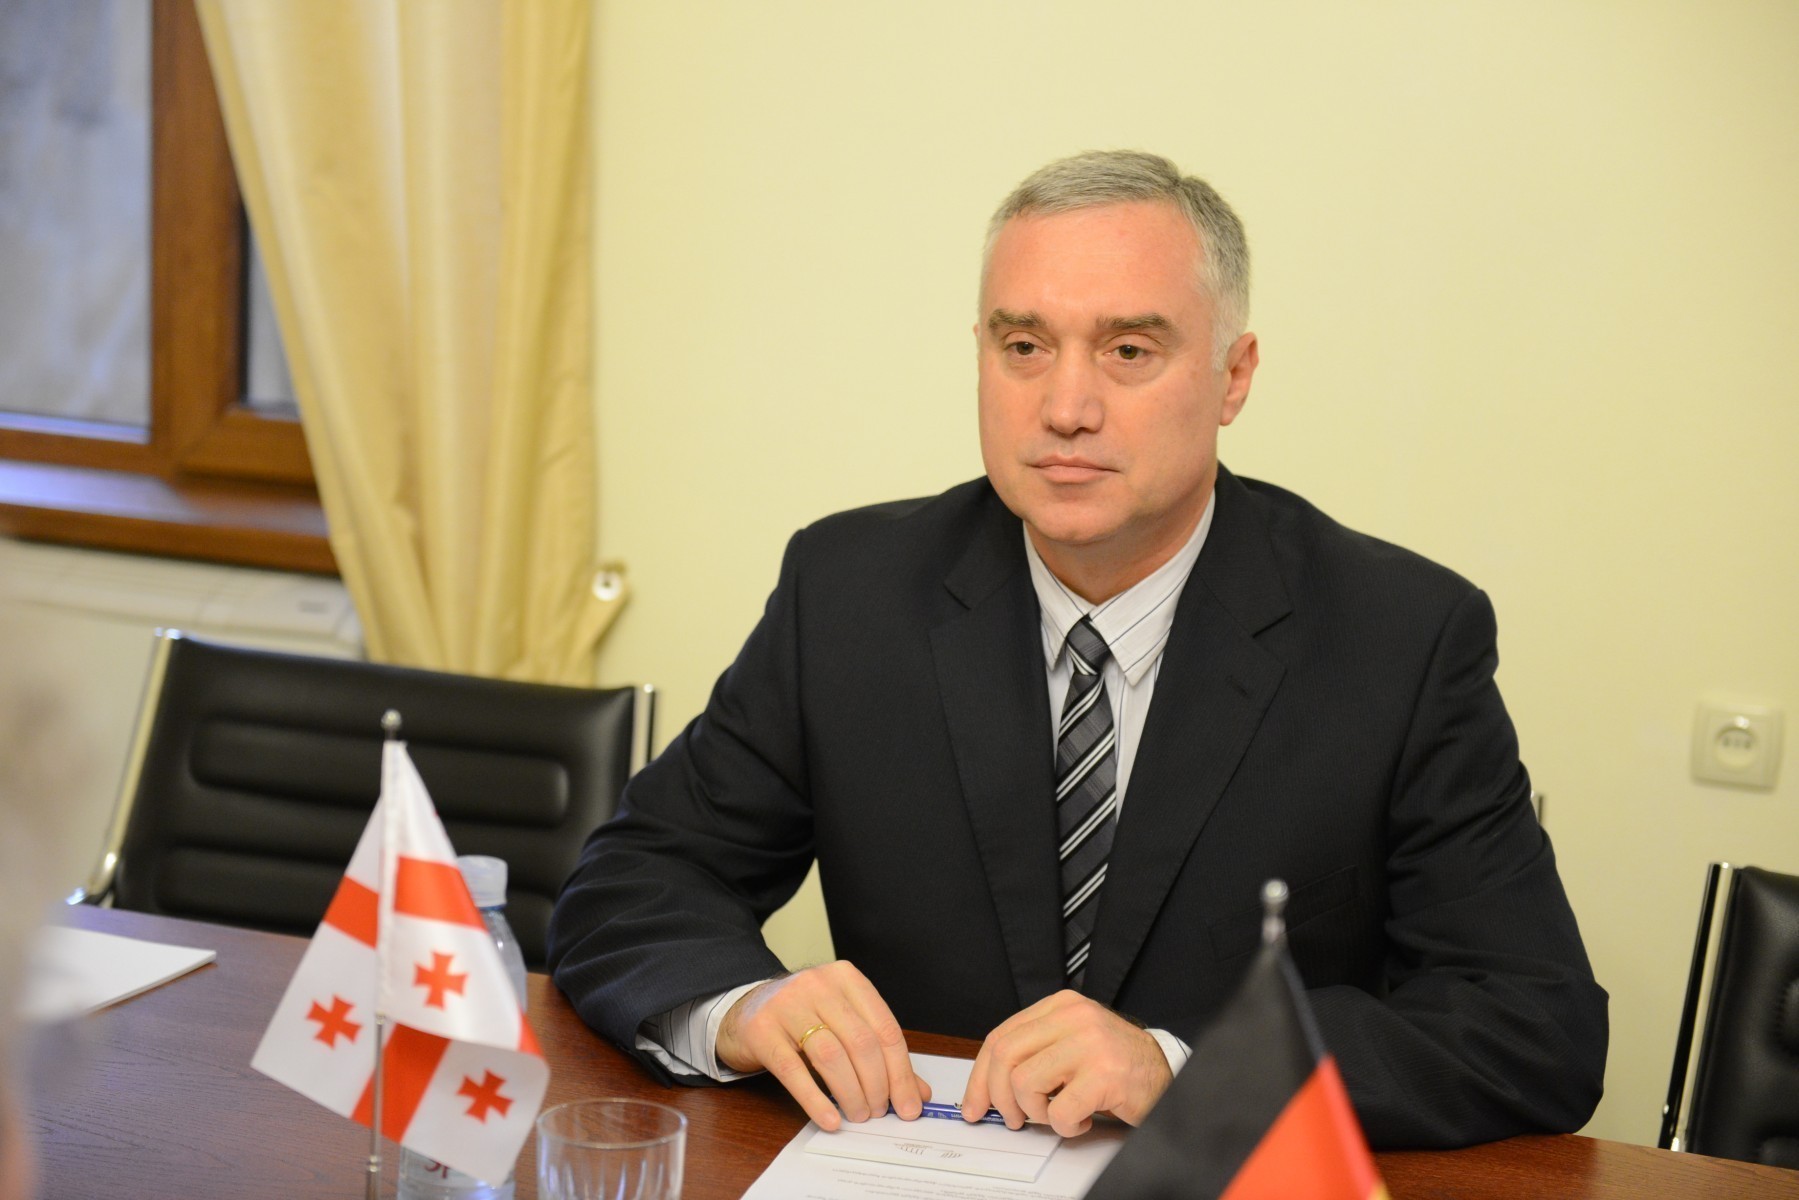 Руководитель грузино-азербайджанской межпарламентской группы дружбы подал в отставку